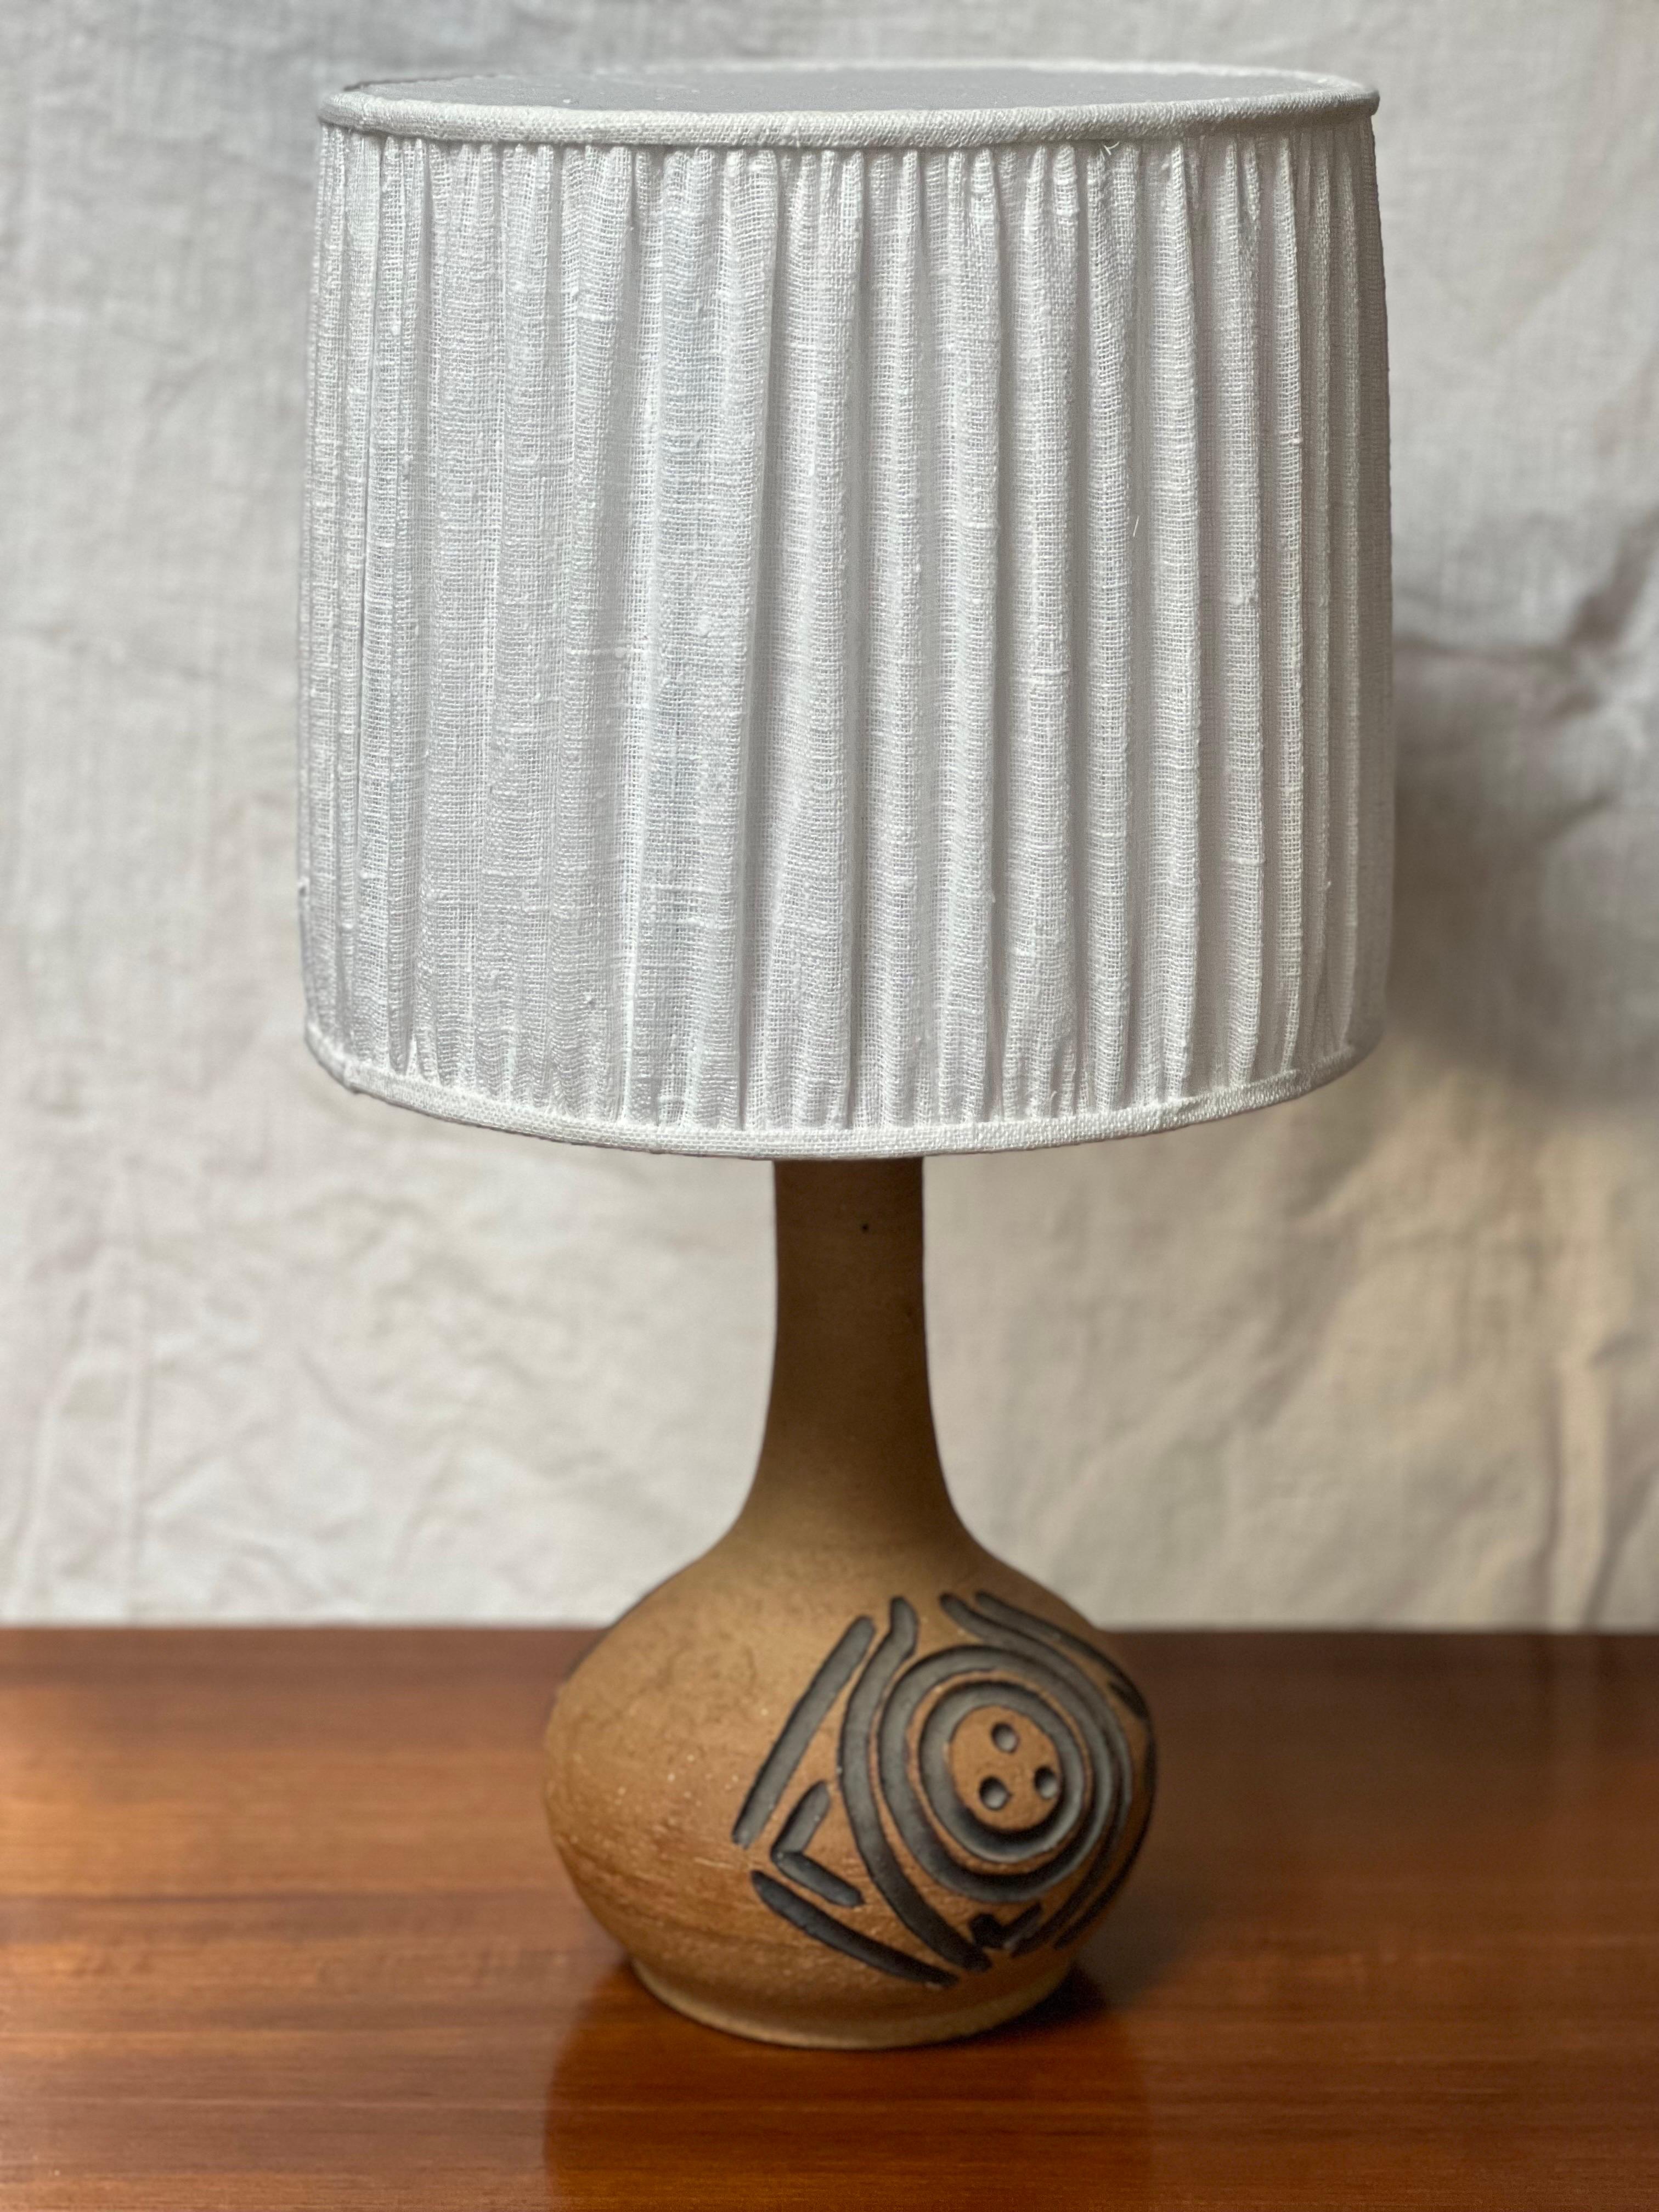 Lampe fabriquée dans les années 1970 à l'Axella studio design qui était une entreprise de fabrication de céramique. Tons de terre avec un motif noirci prononcé. La hauteur totale de cette lampe, abat-jour compris, est de 57 cm. L'abat-jour a une